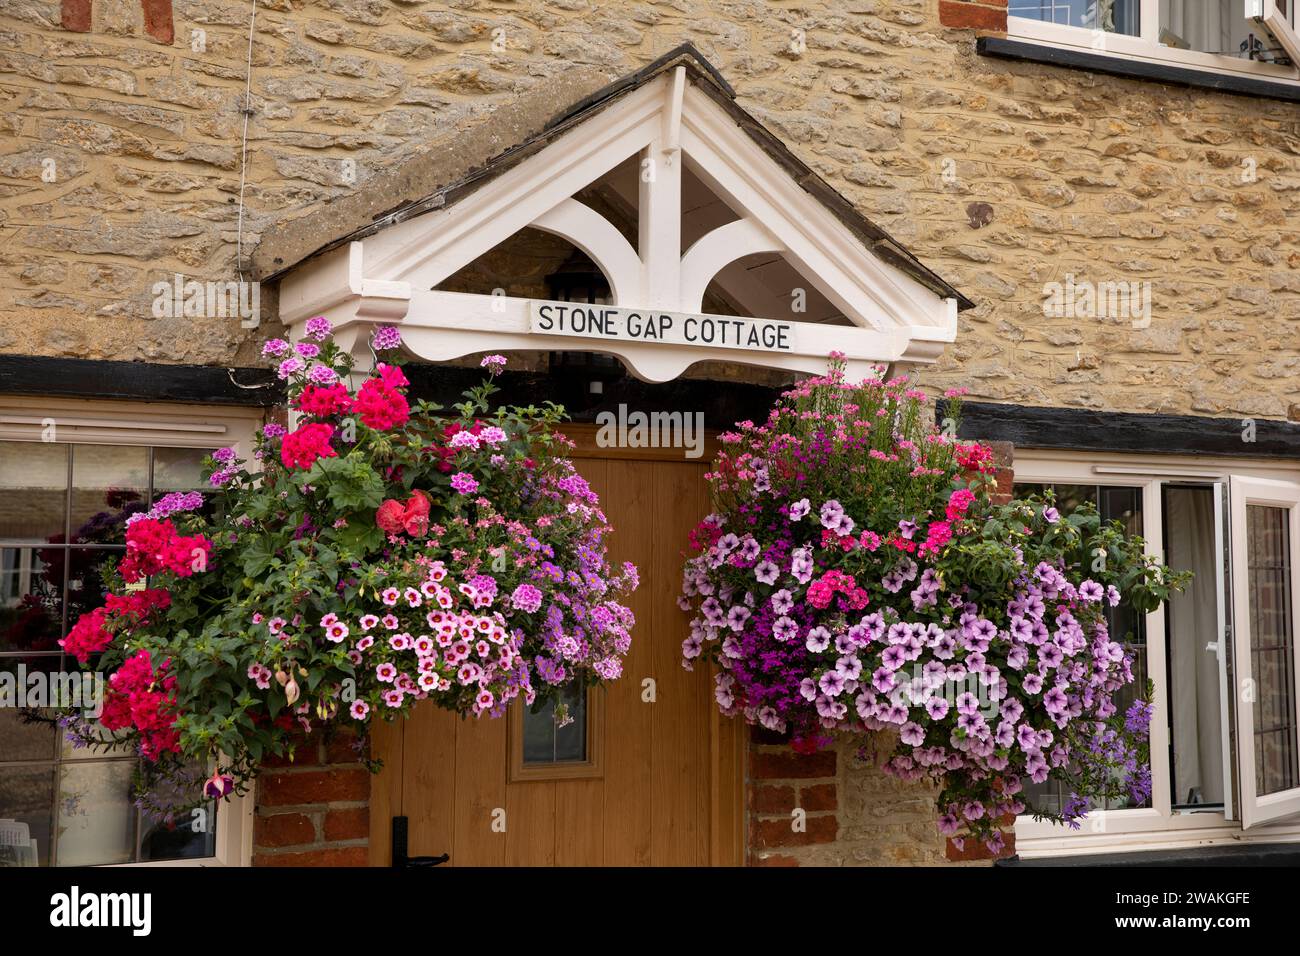 Regno Unito, Inghilterra, Oxfordshire, Fringford, Main Street, Stone Gap Cottage cestini colorati con motivi floreali appesi Foto Stock